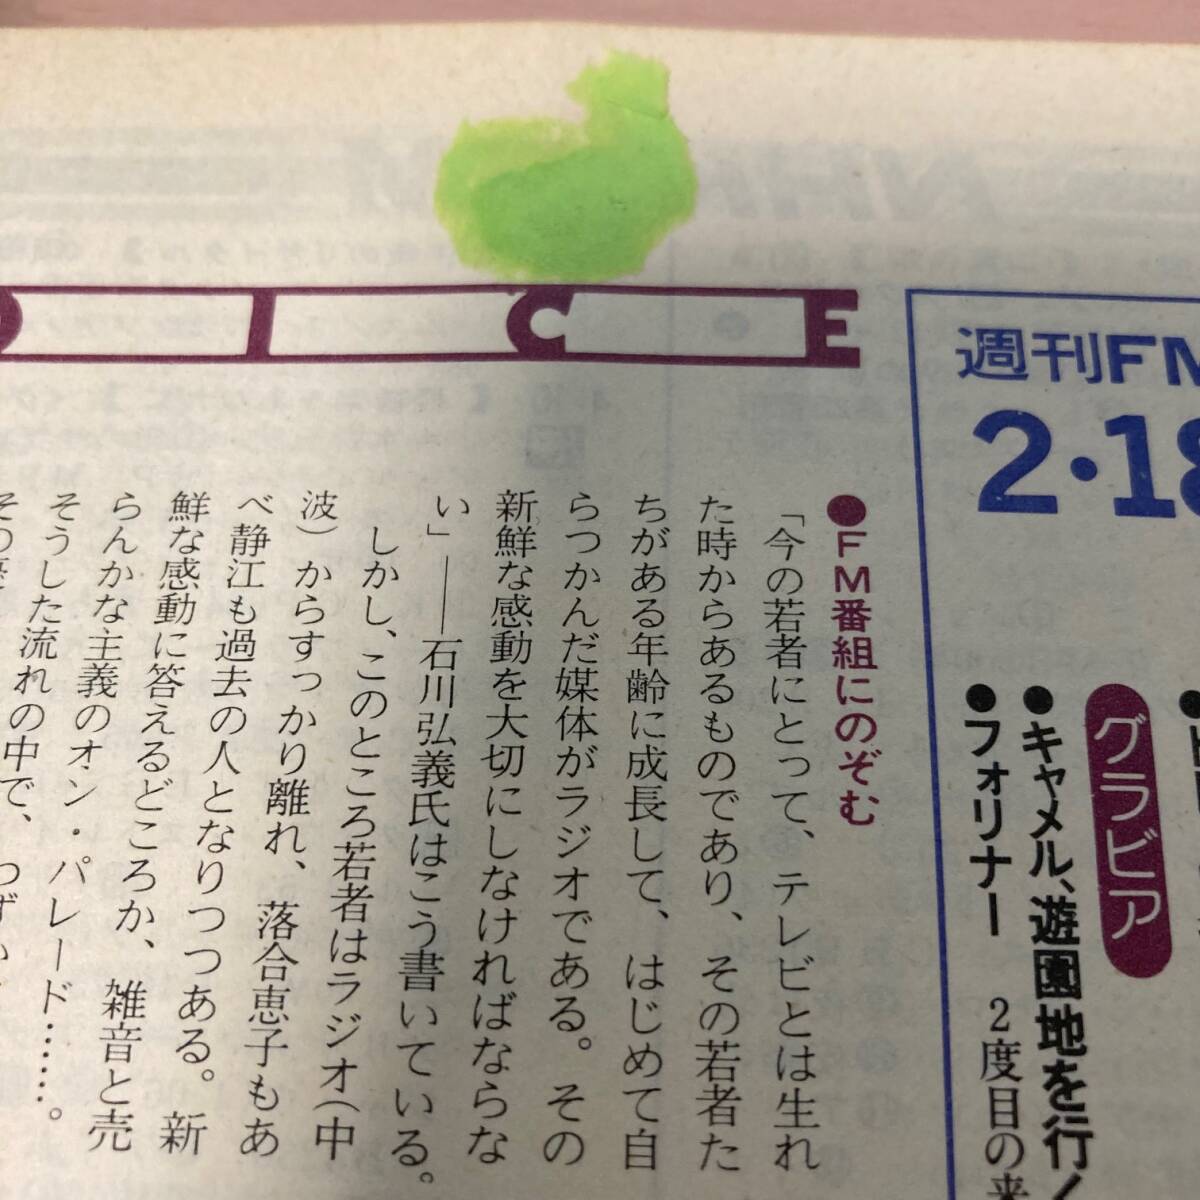 週刊FM 東版 1980年2月18日 松山千春 伊勢正三の画像8